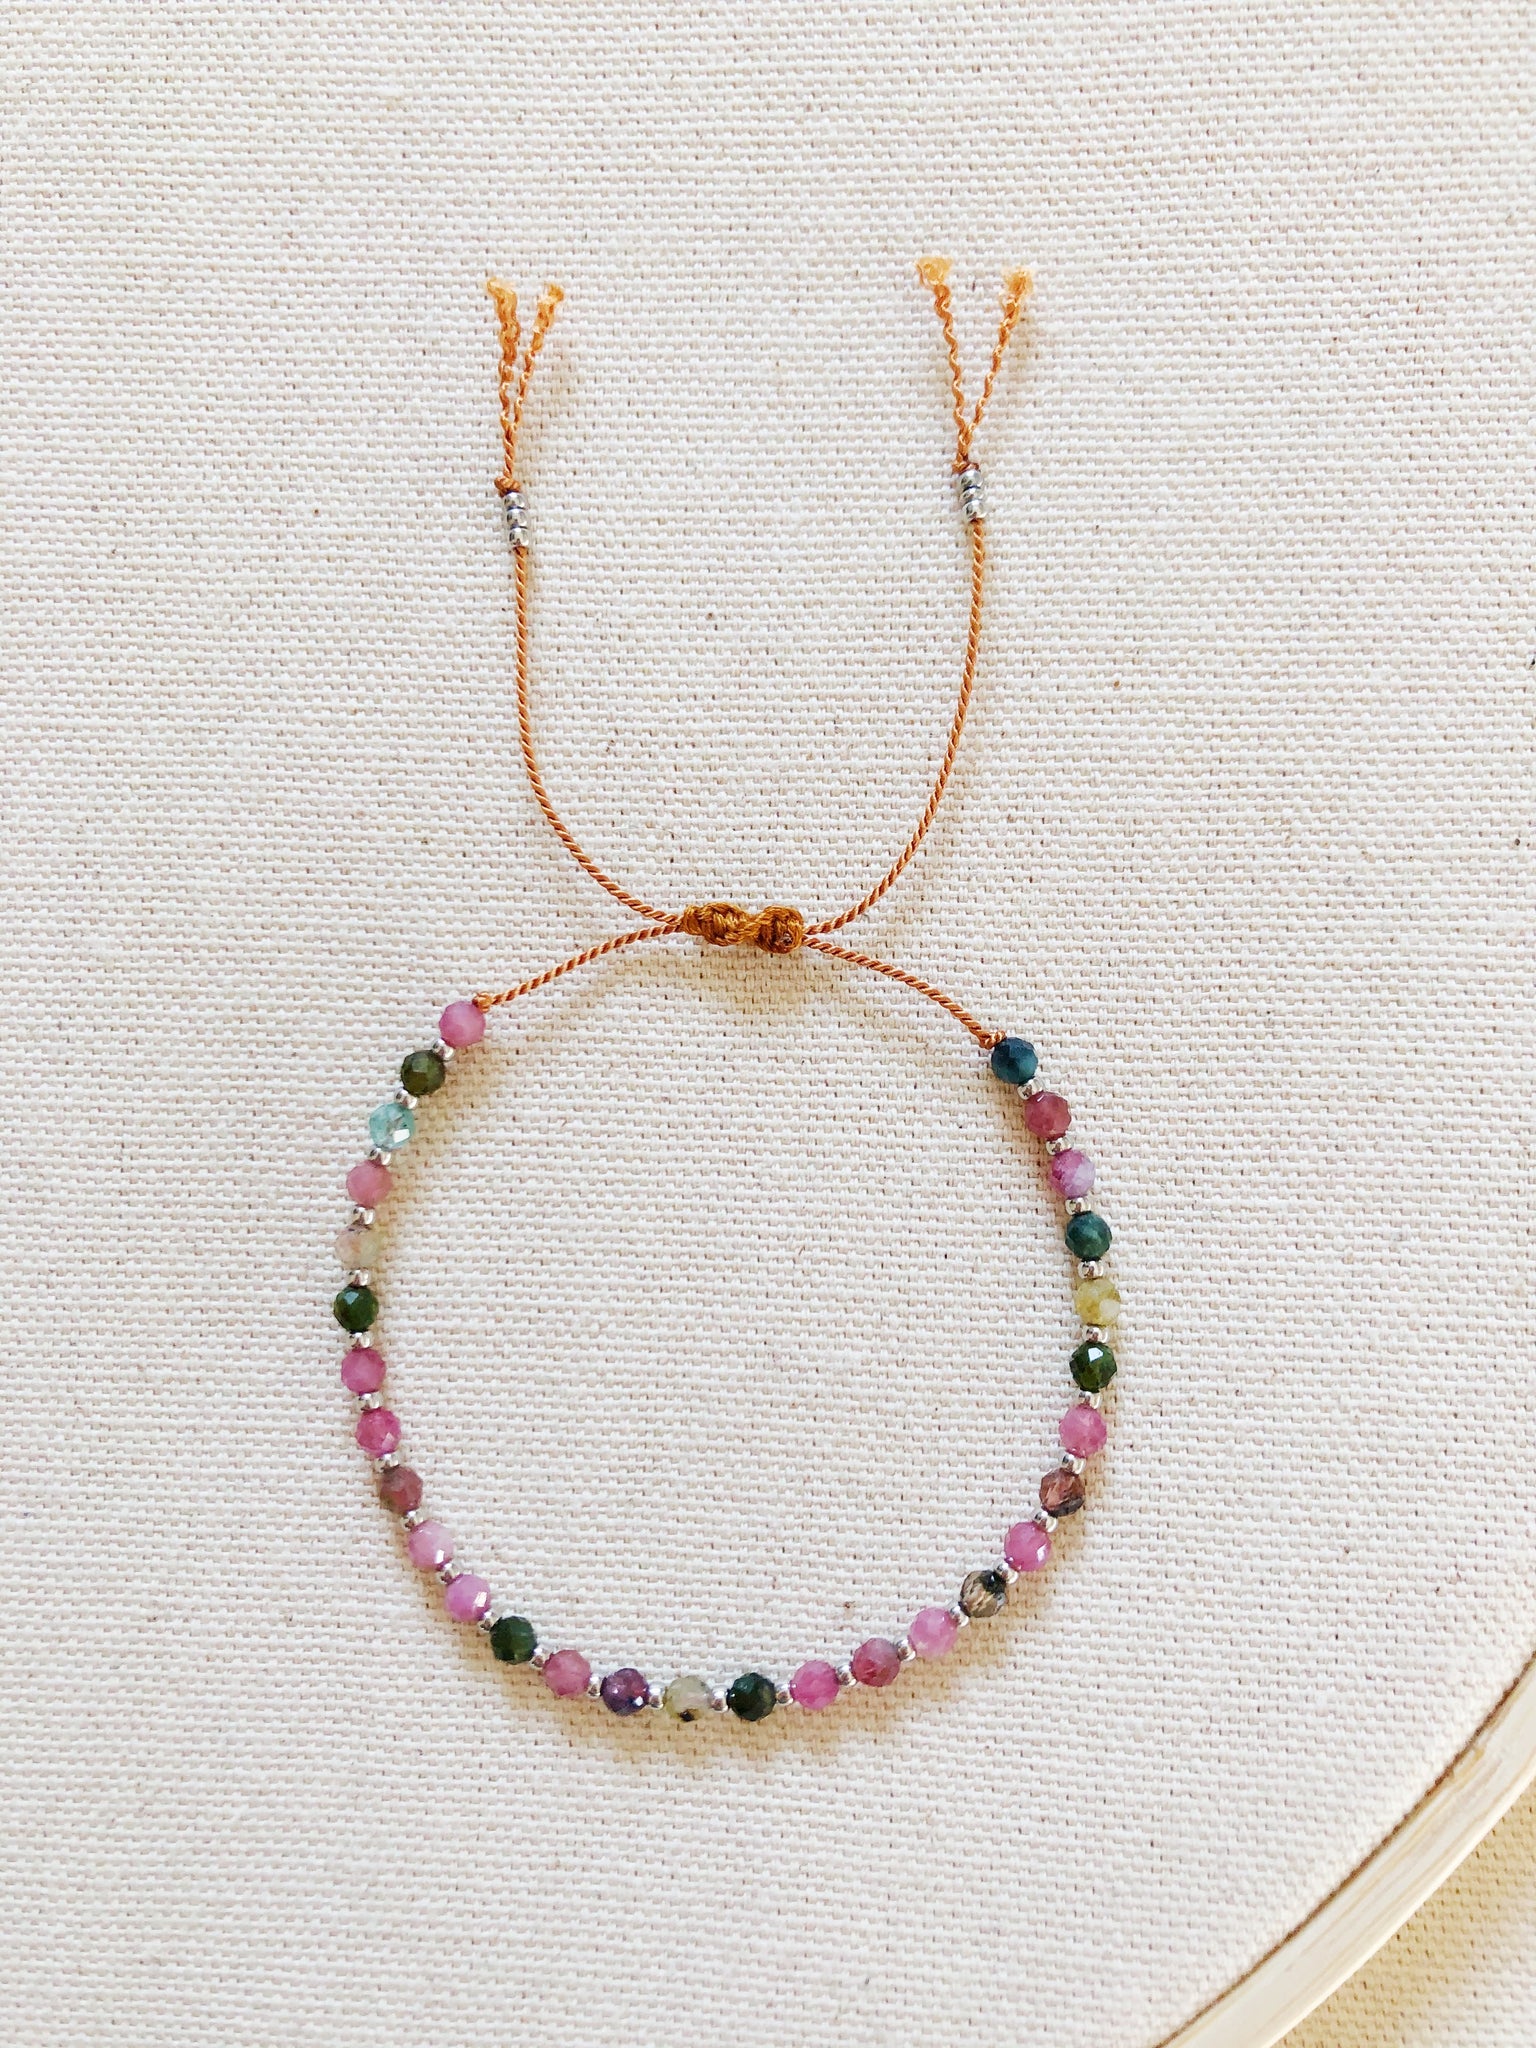 Anhelo single bracelet with tourmaline beads